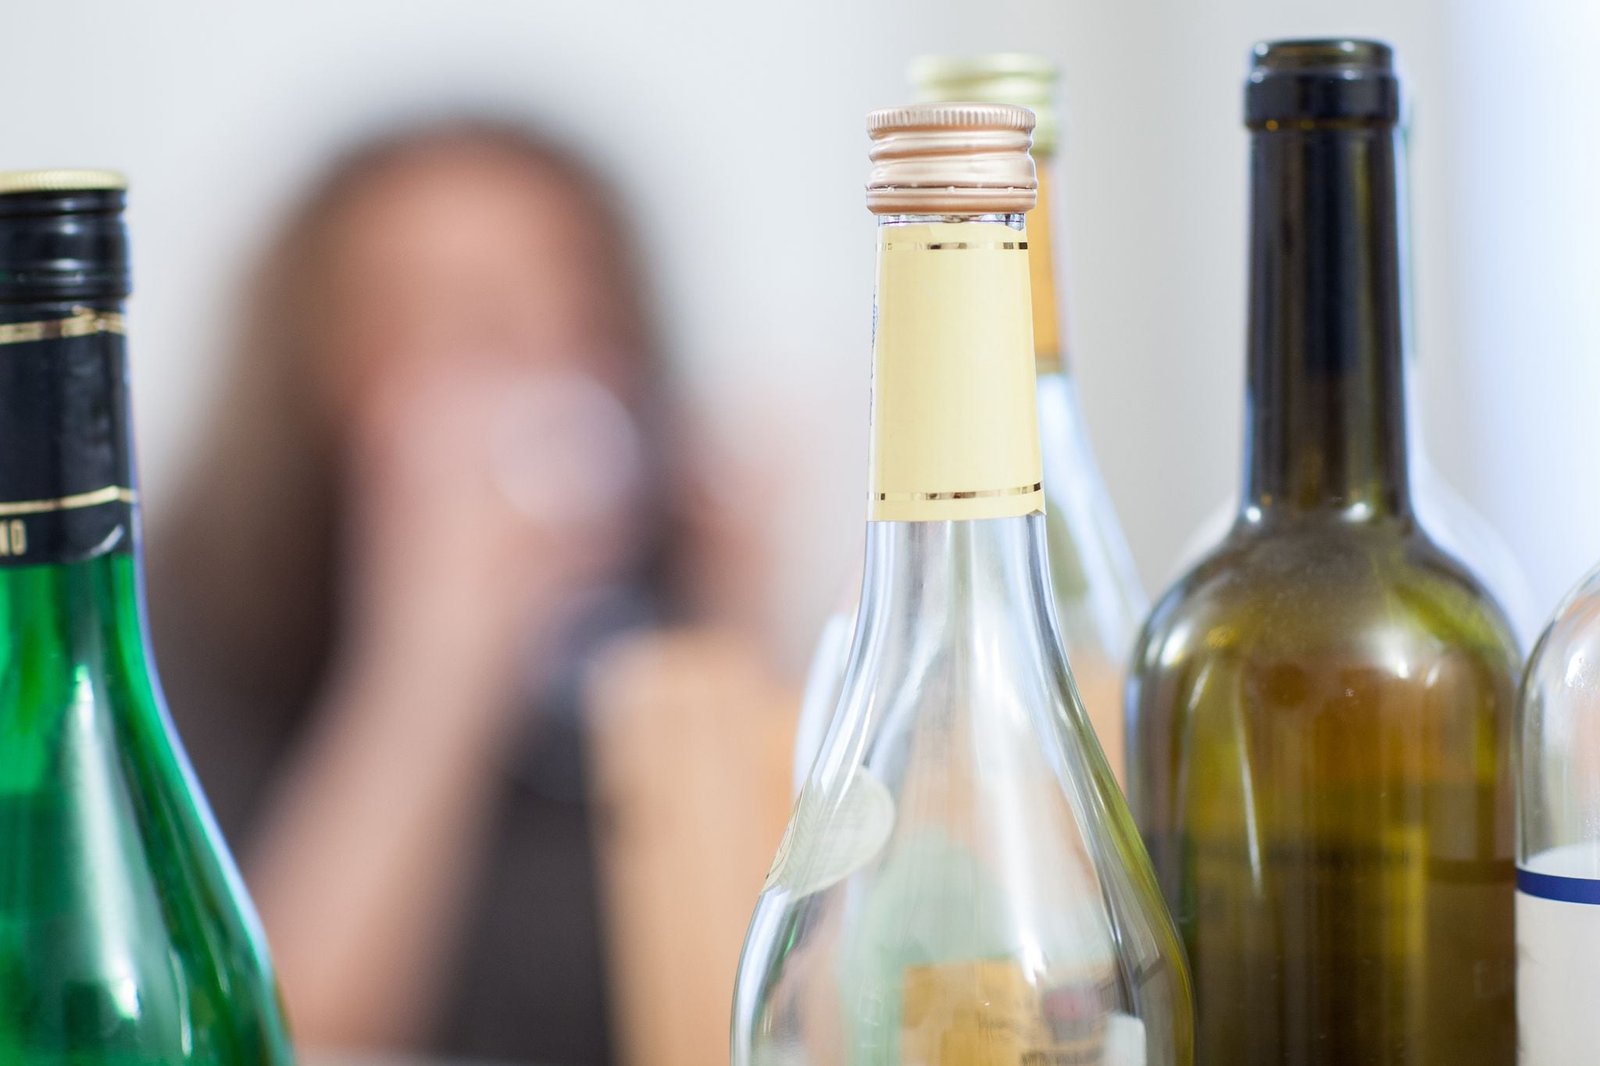 ILUSTRACIÓN - El alcoholismo de un familiar no es siempre tan visible para los que rodean a la persona afectada. Foto: Christin Klose/dpa